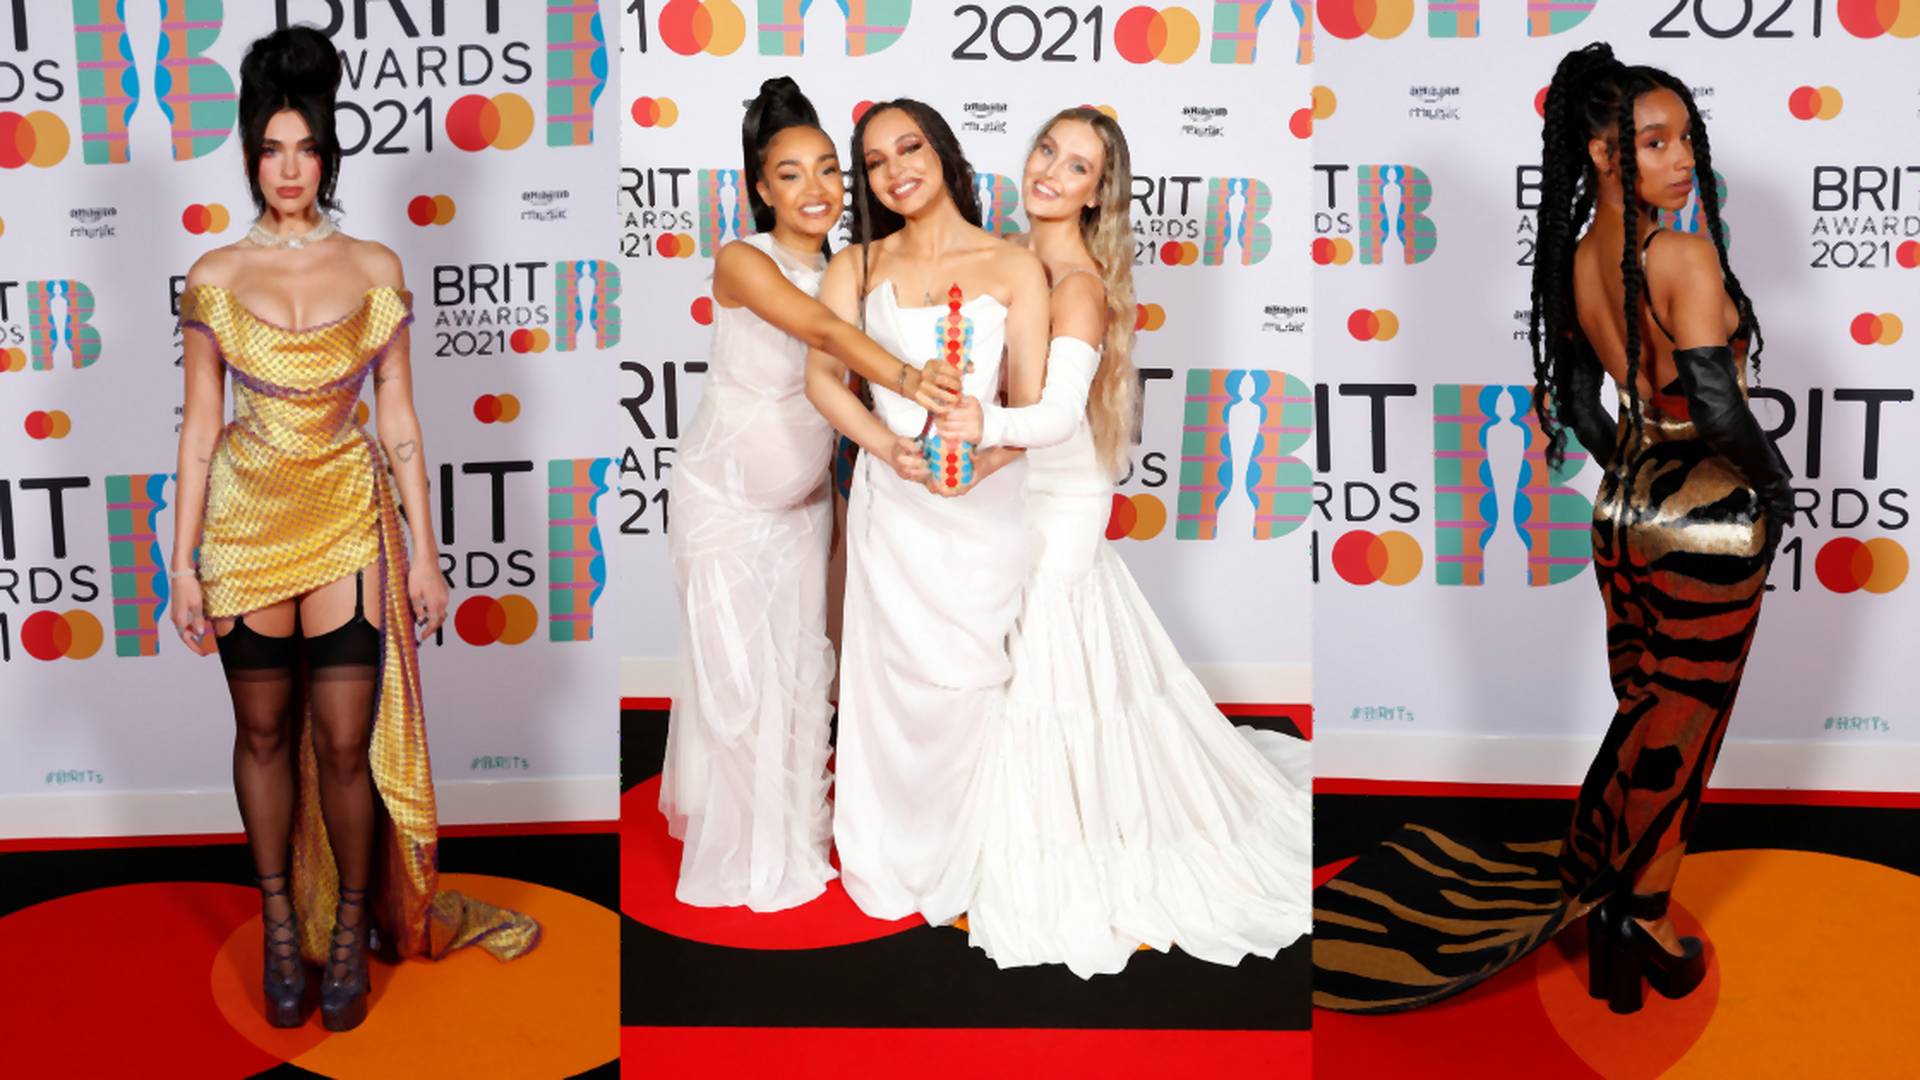 Ako vyzerali Brit Awards 2021? Sexi Dua Lipa bola hviezdou večera, prišla aj Taylor Swift